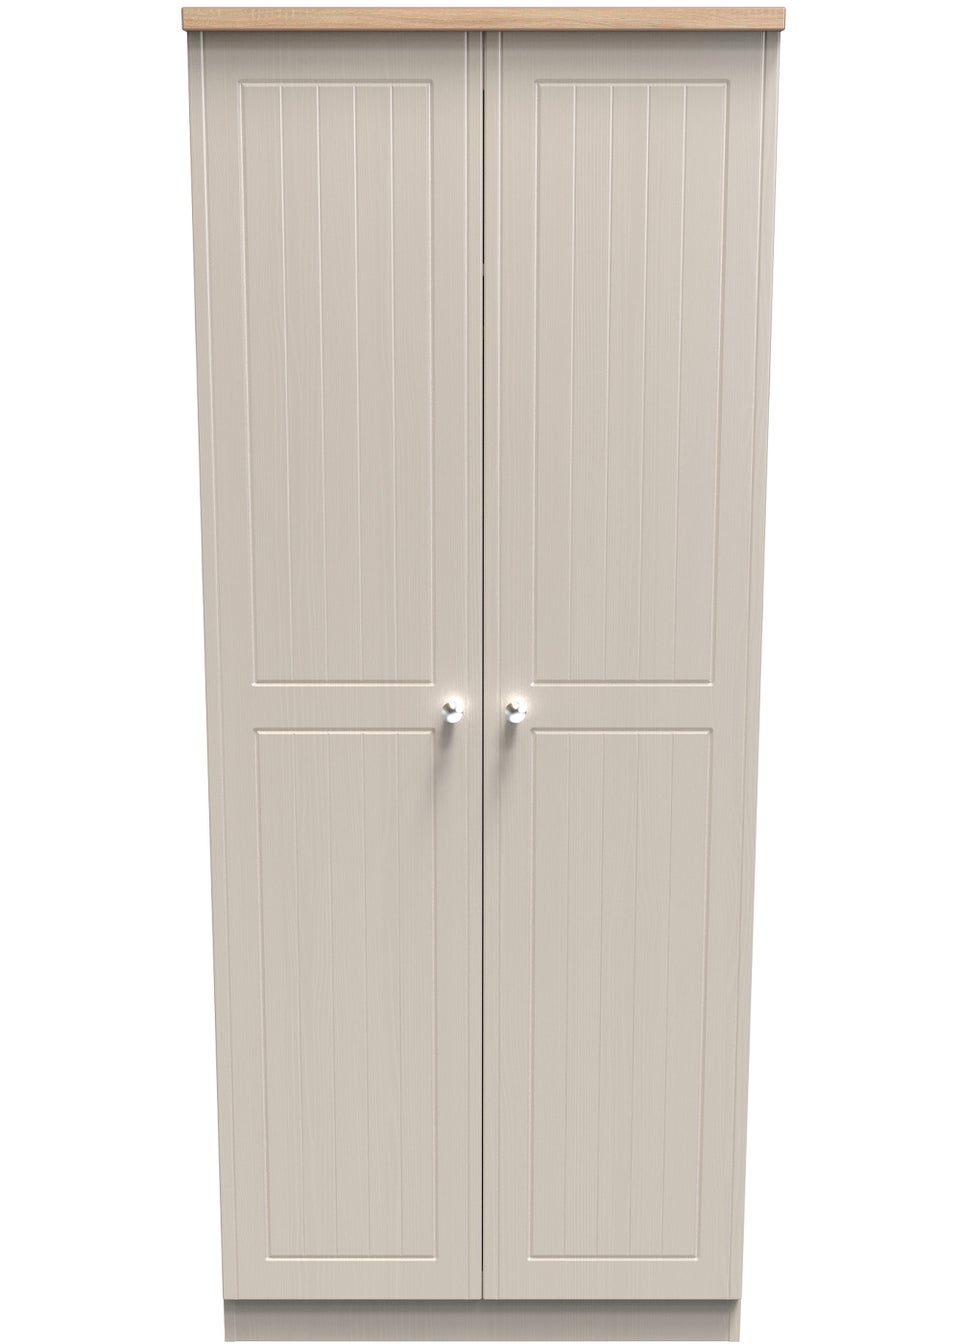 Swift Vienna Ivory 2 Door Wardrobe (182.5cm x 74cm x 53cm)